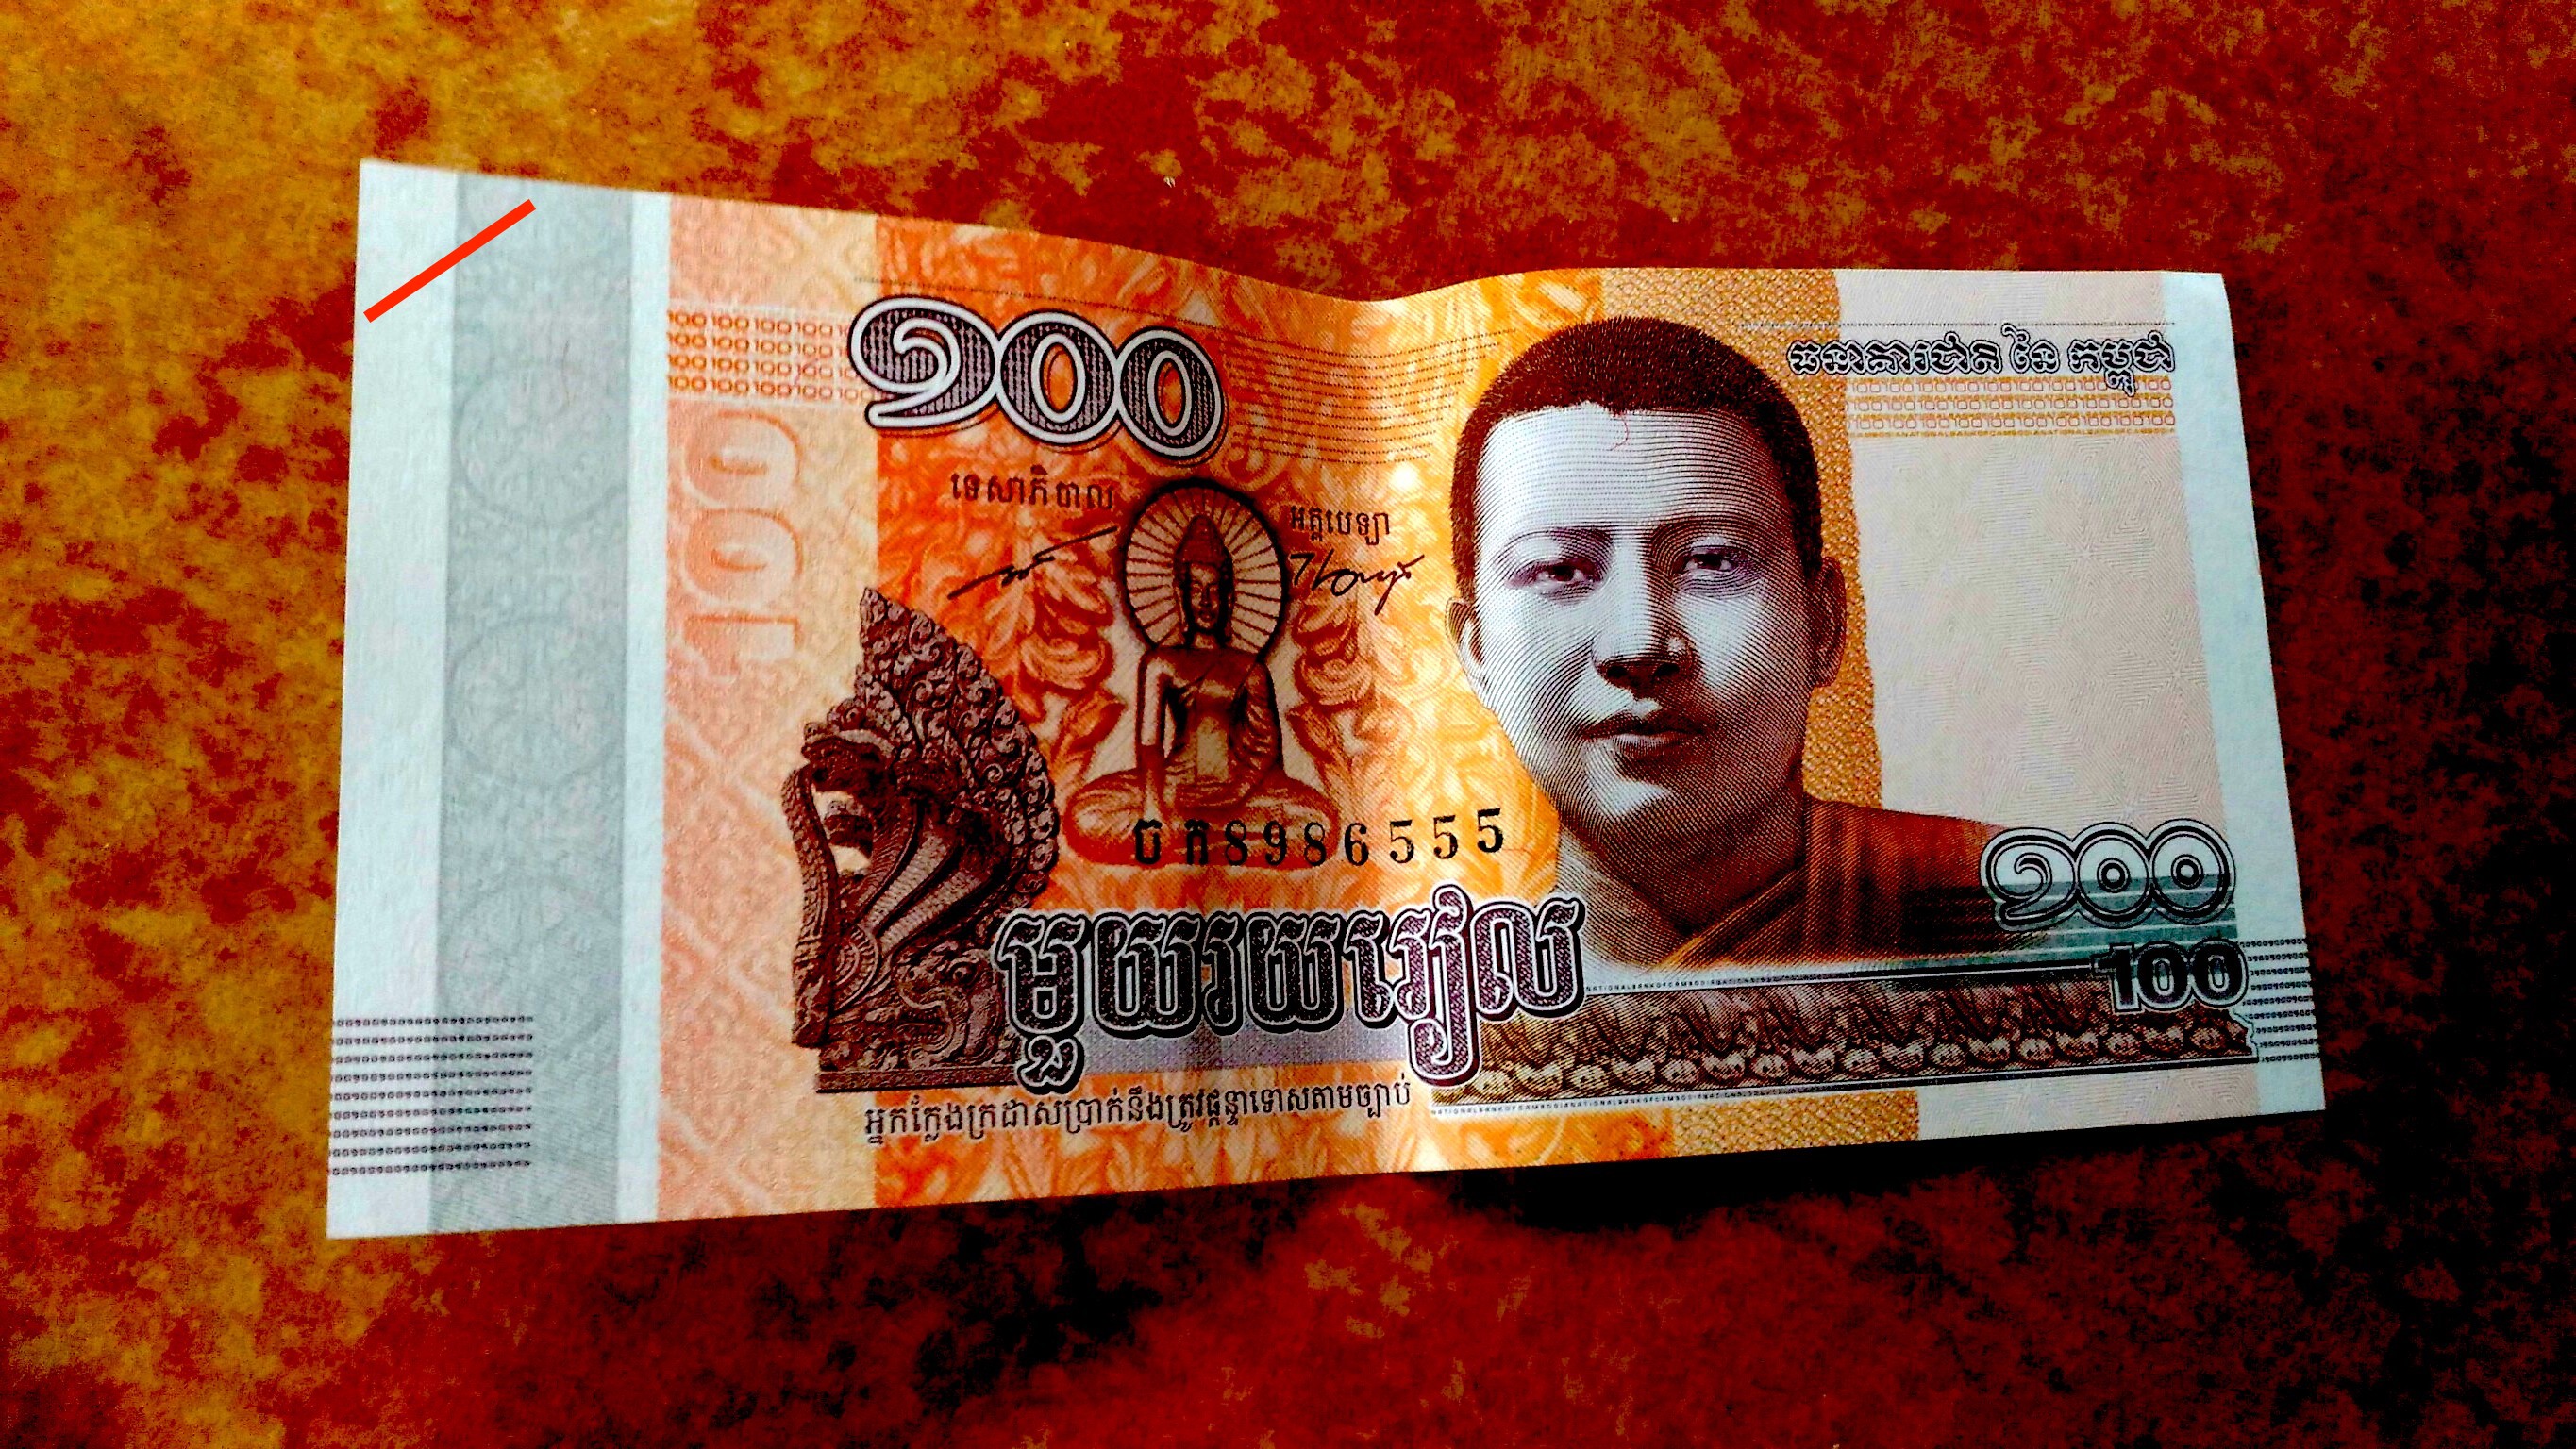 カンボジアの通貨「Riel（リエル）」の紹介 まさとぶろぐ＠カンボジア